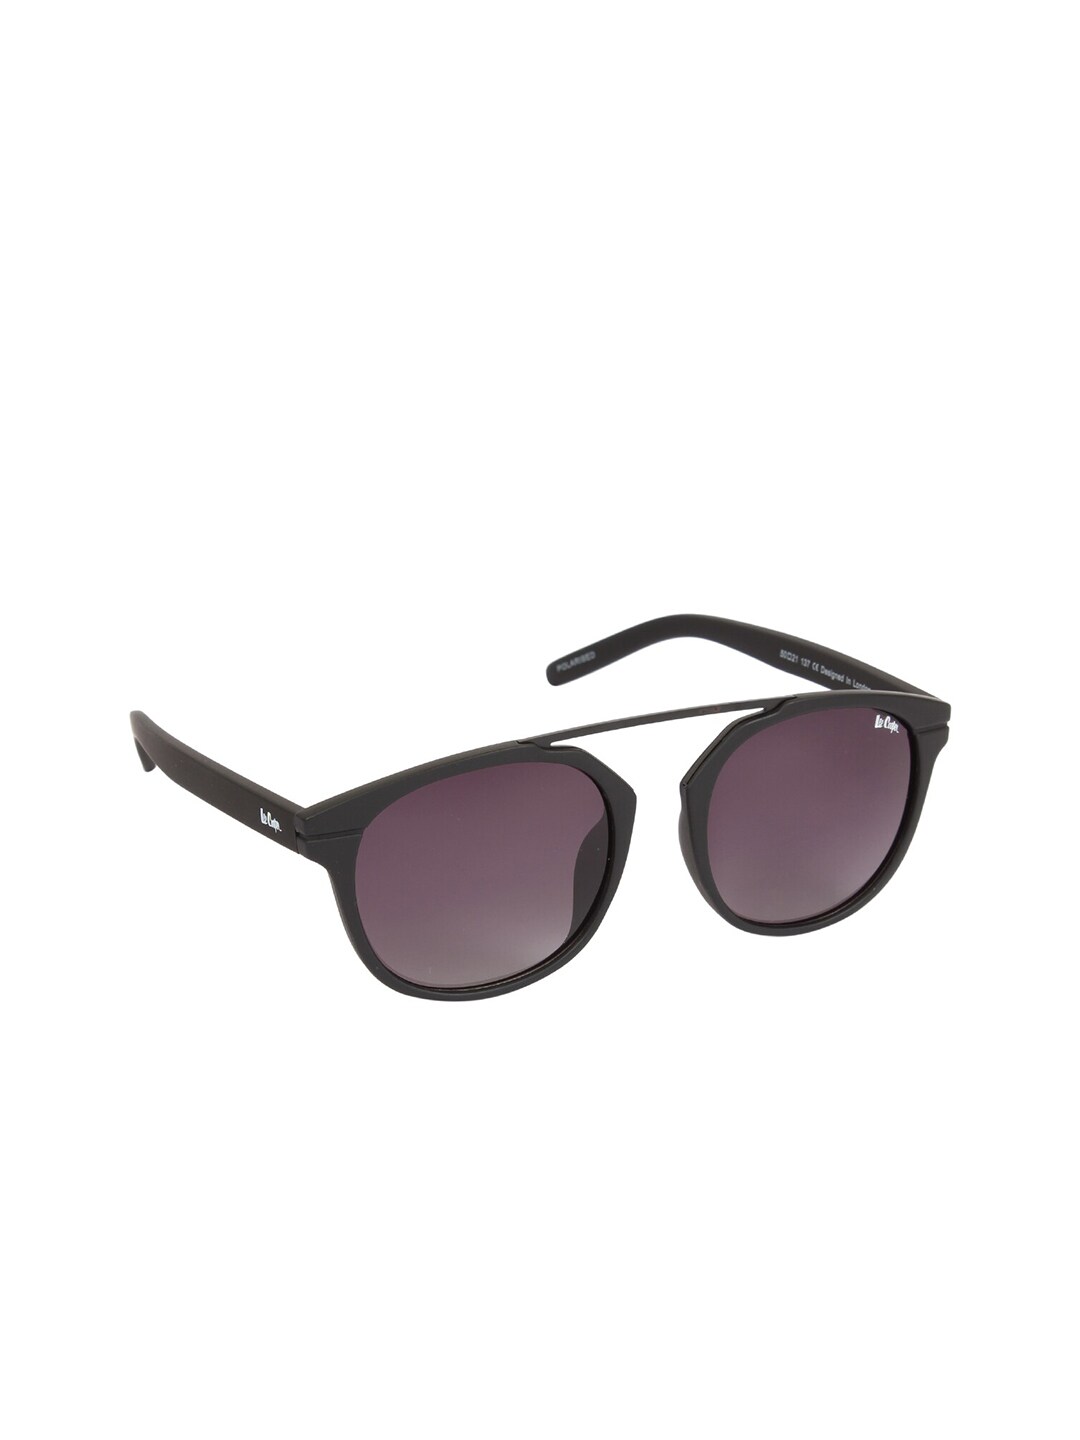 Lee Cooper Unisex Black Sunglasses Price in India